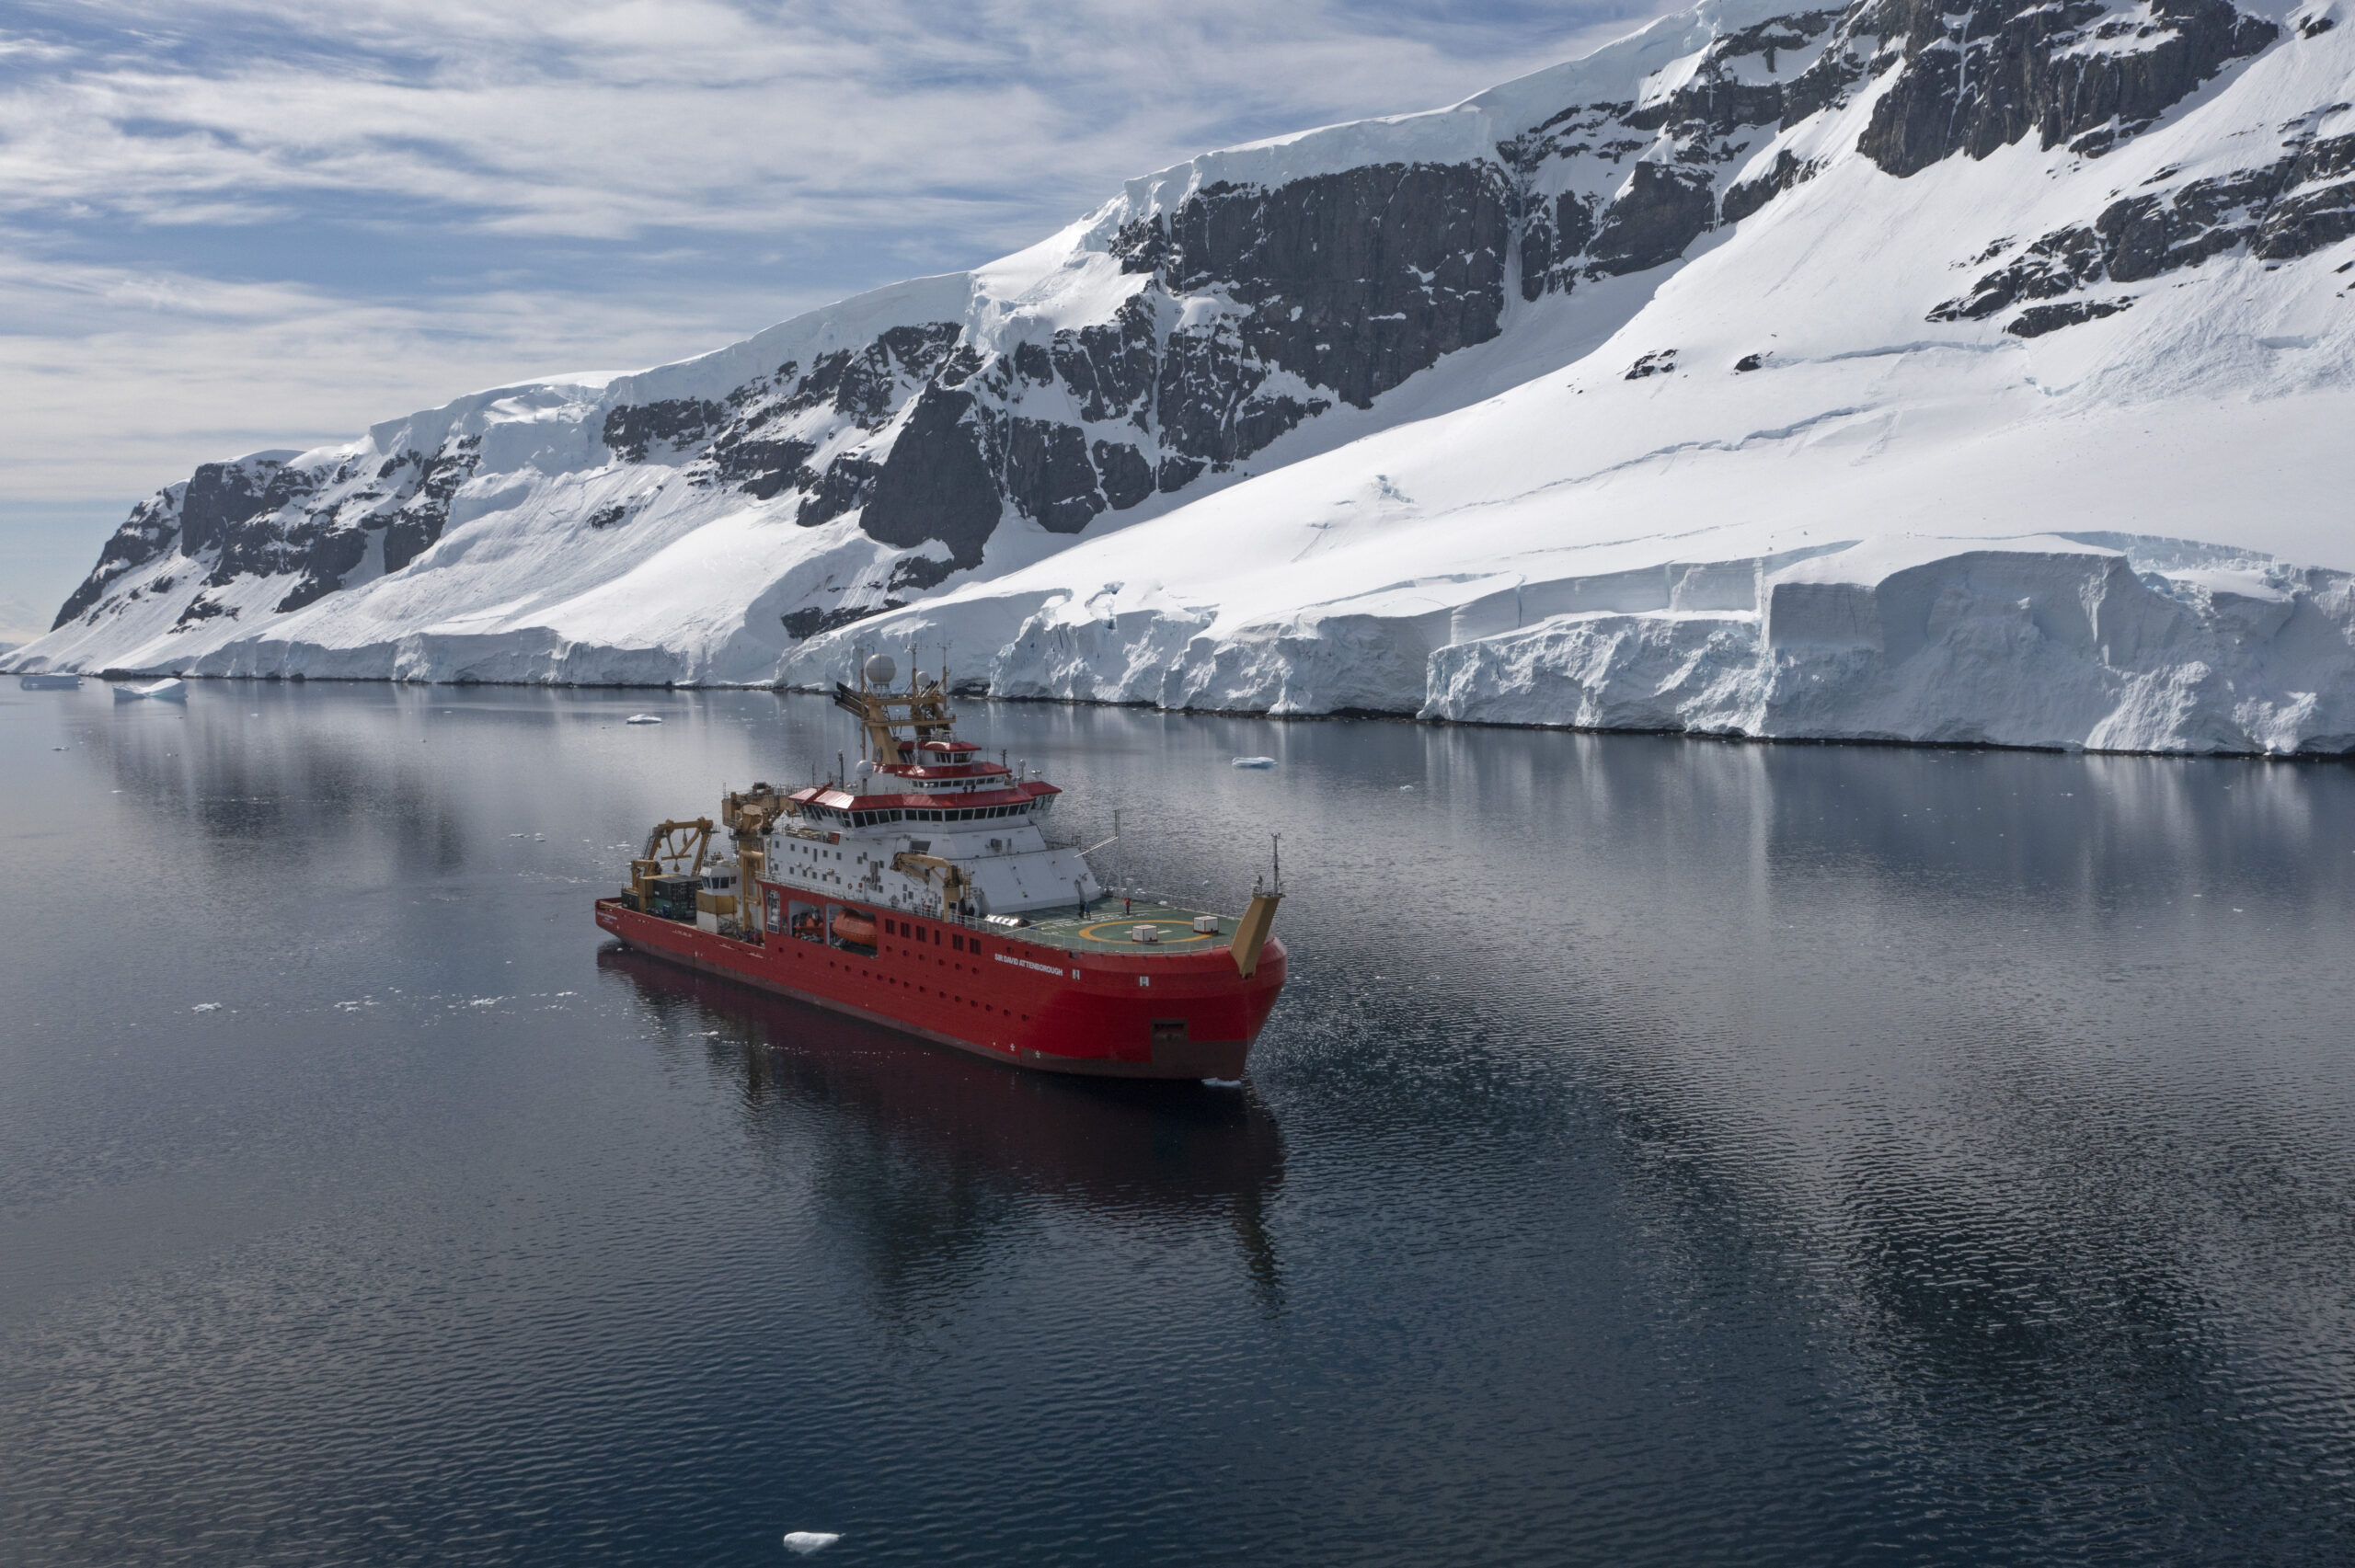 إنجاز بارز لمسح القطب الجنوبي البريطاني - مشروع محو الأمية الكربونية